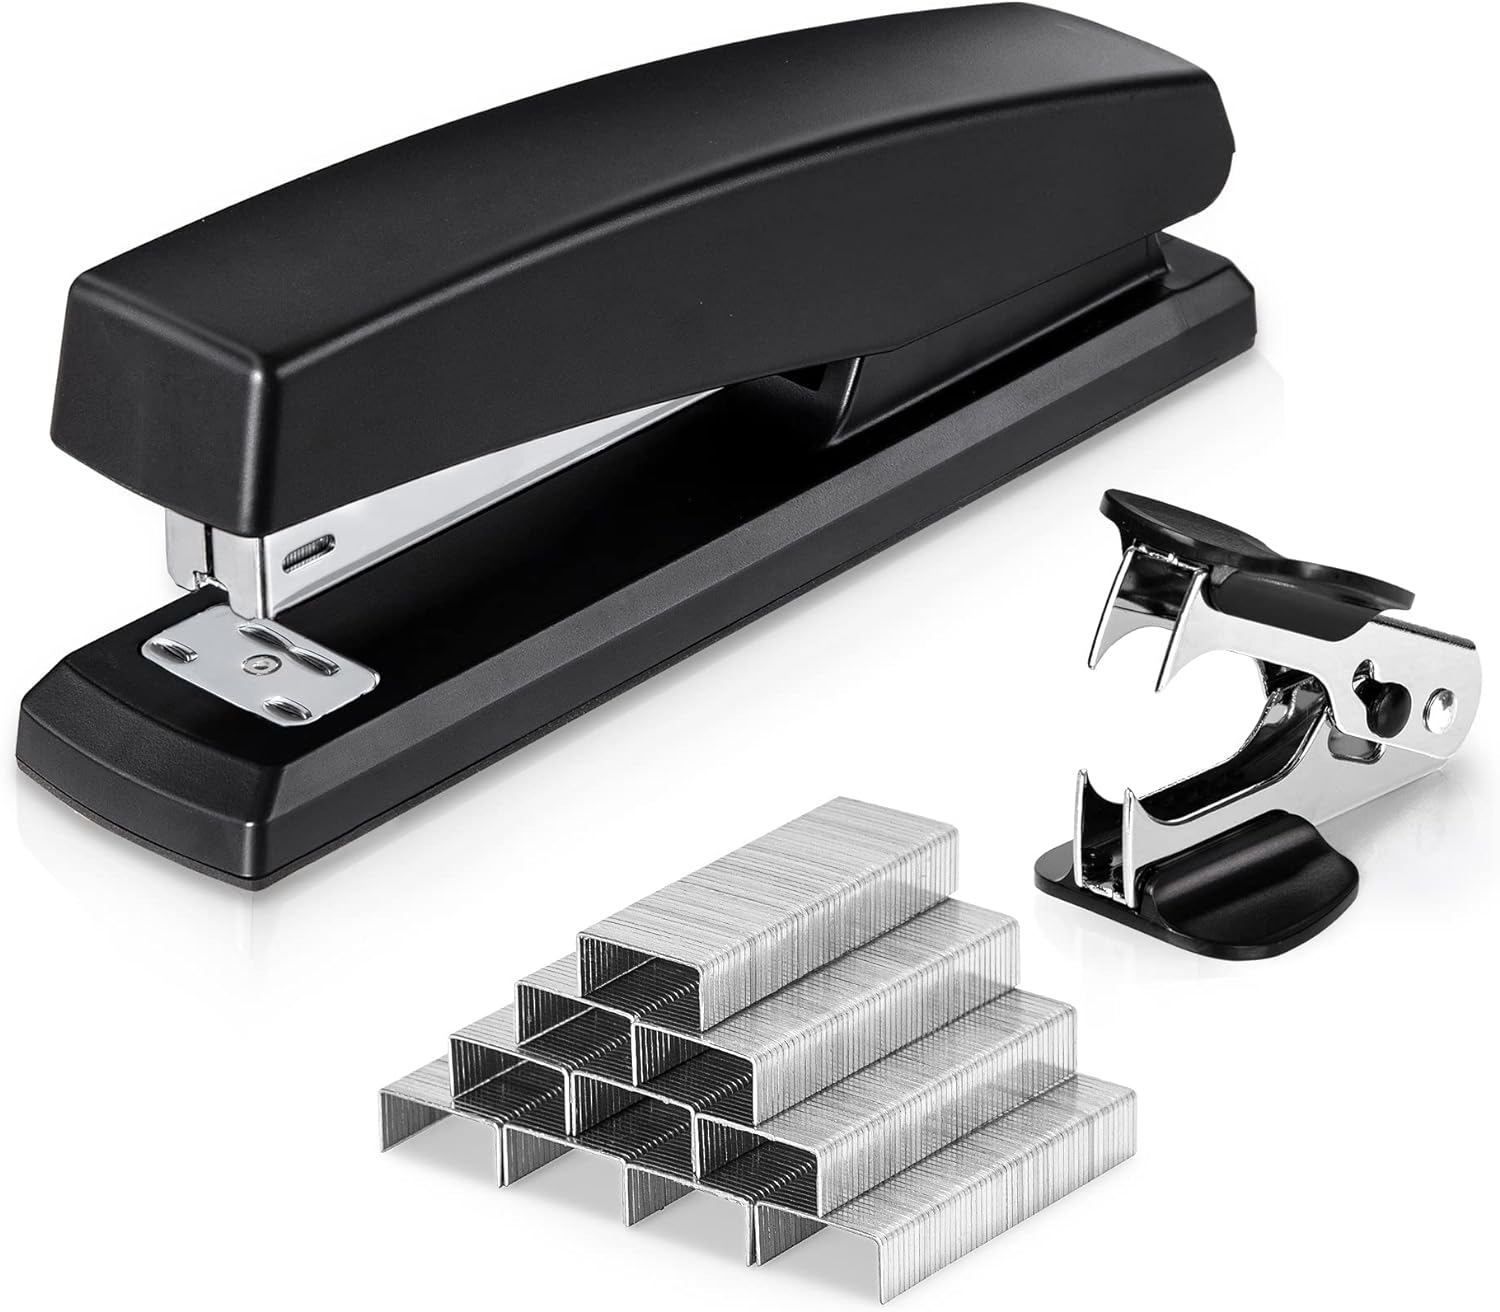 Deli Stapler, Desktop Stapler, Office Stapler, 25 Sheet Capacity, Includes 1000 Staples and Staple Remover, Black